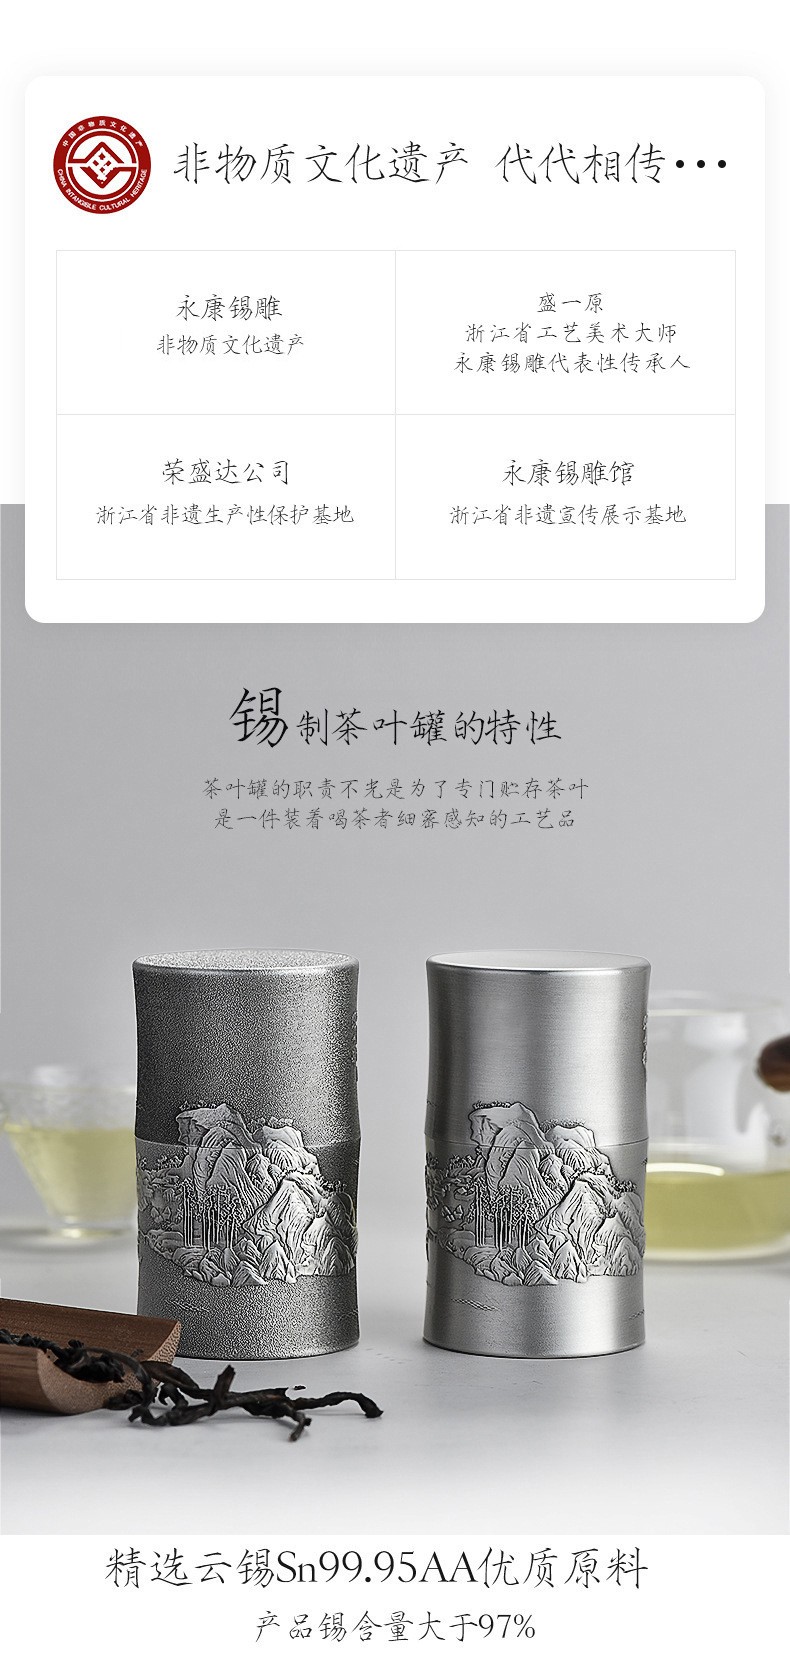 荣盛达中式纯锡商务茶叶罐价格